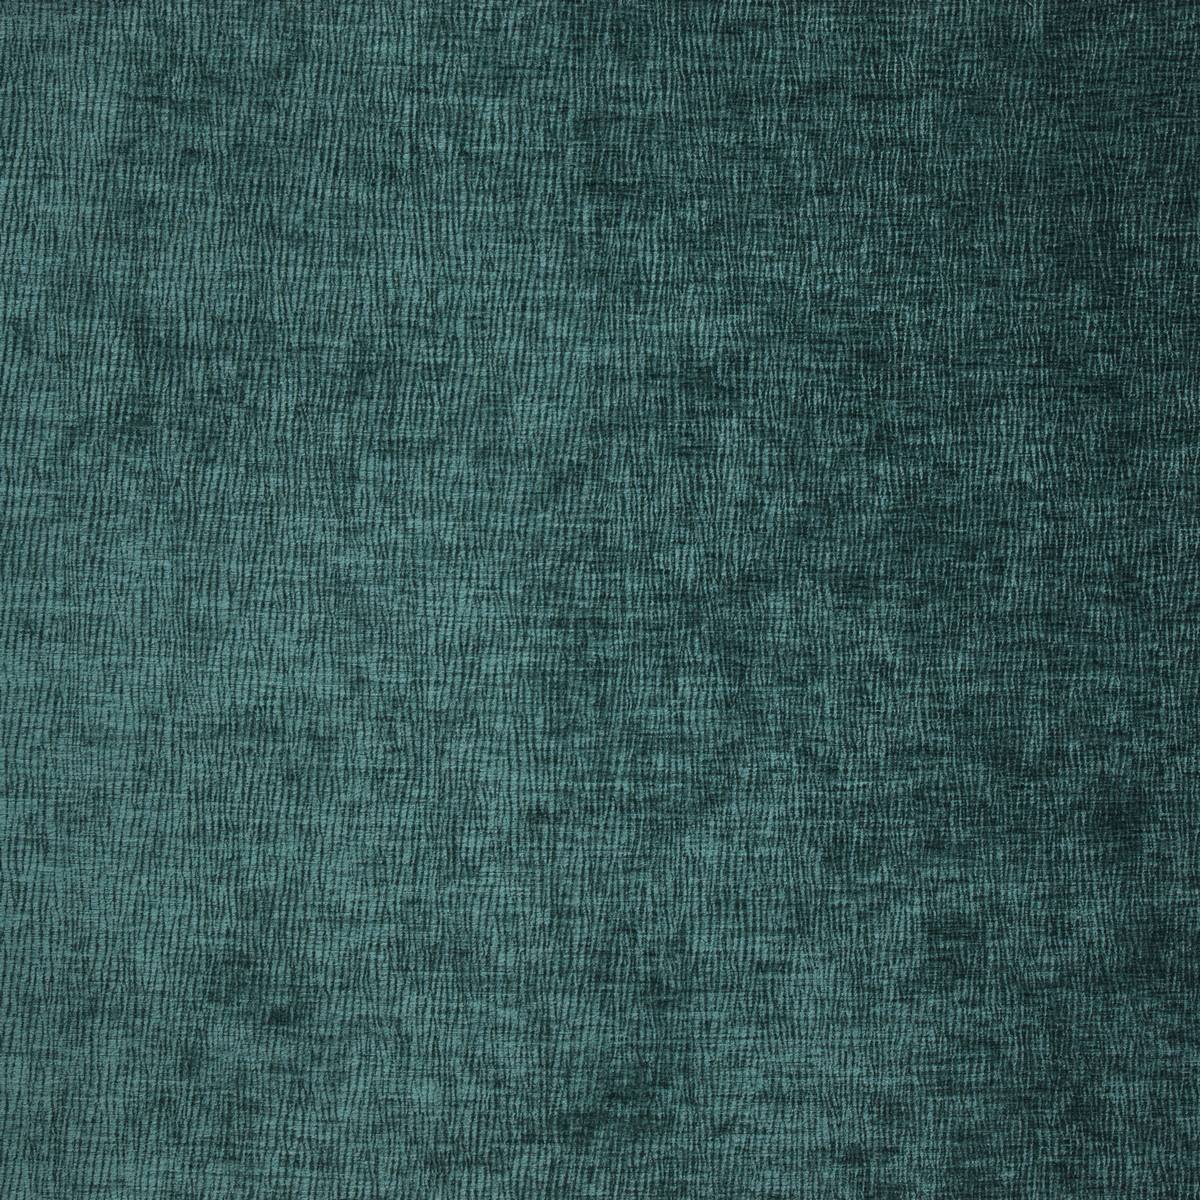 Ashford Teal Fabric by iLiv